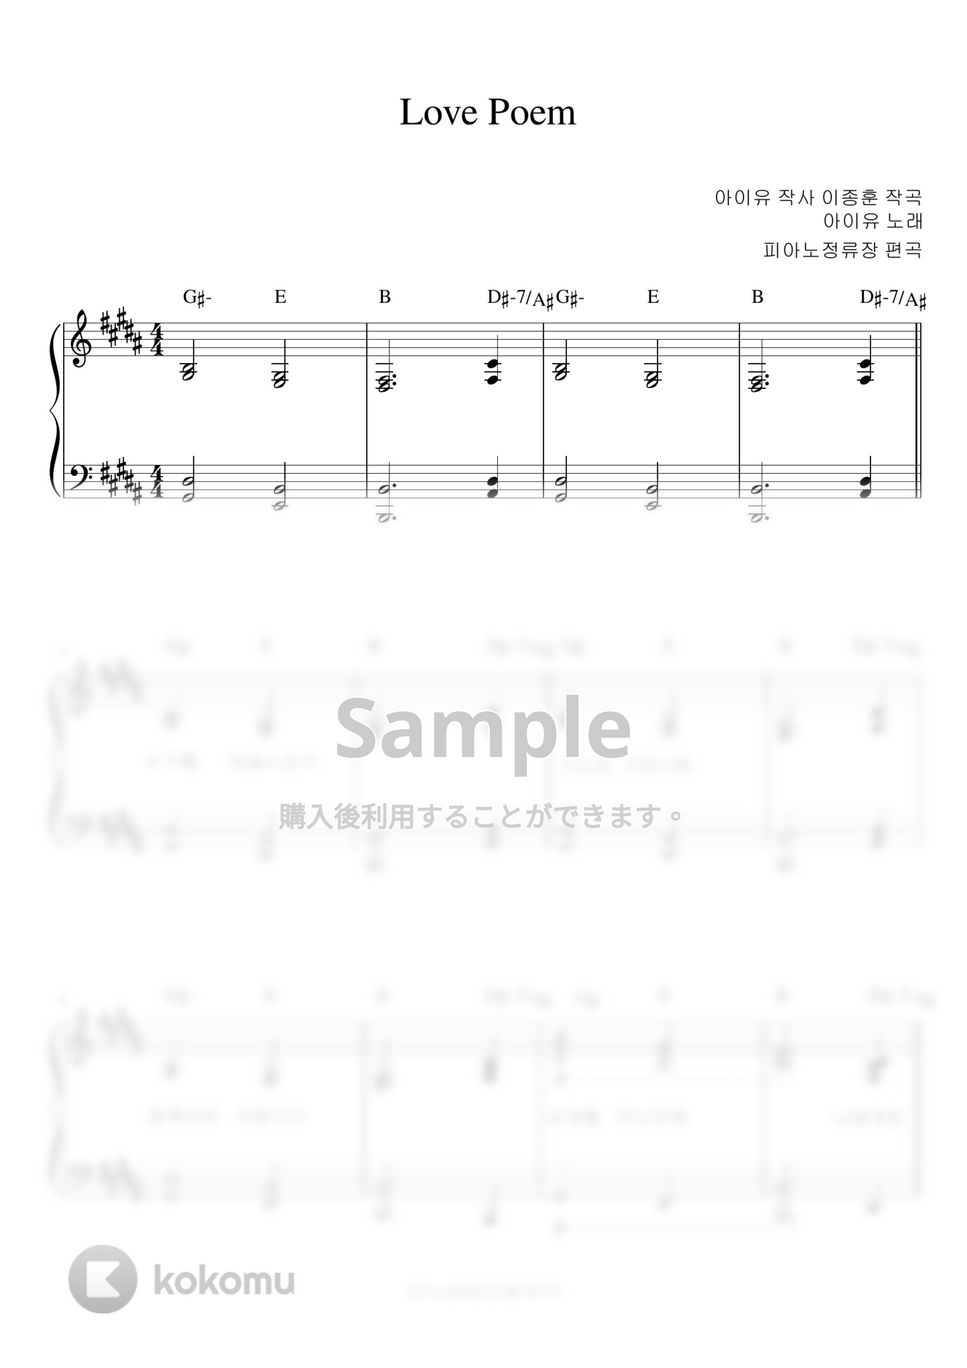 IU - Love Poem (伴奏楽譜) by pianojeongryujang